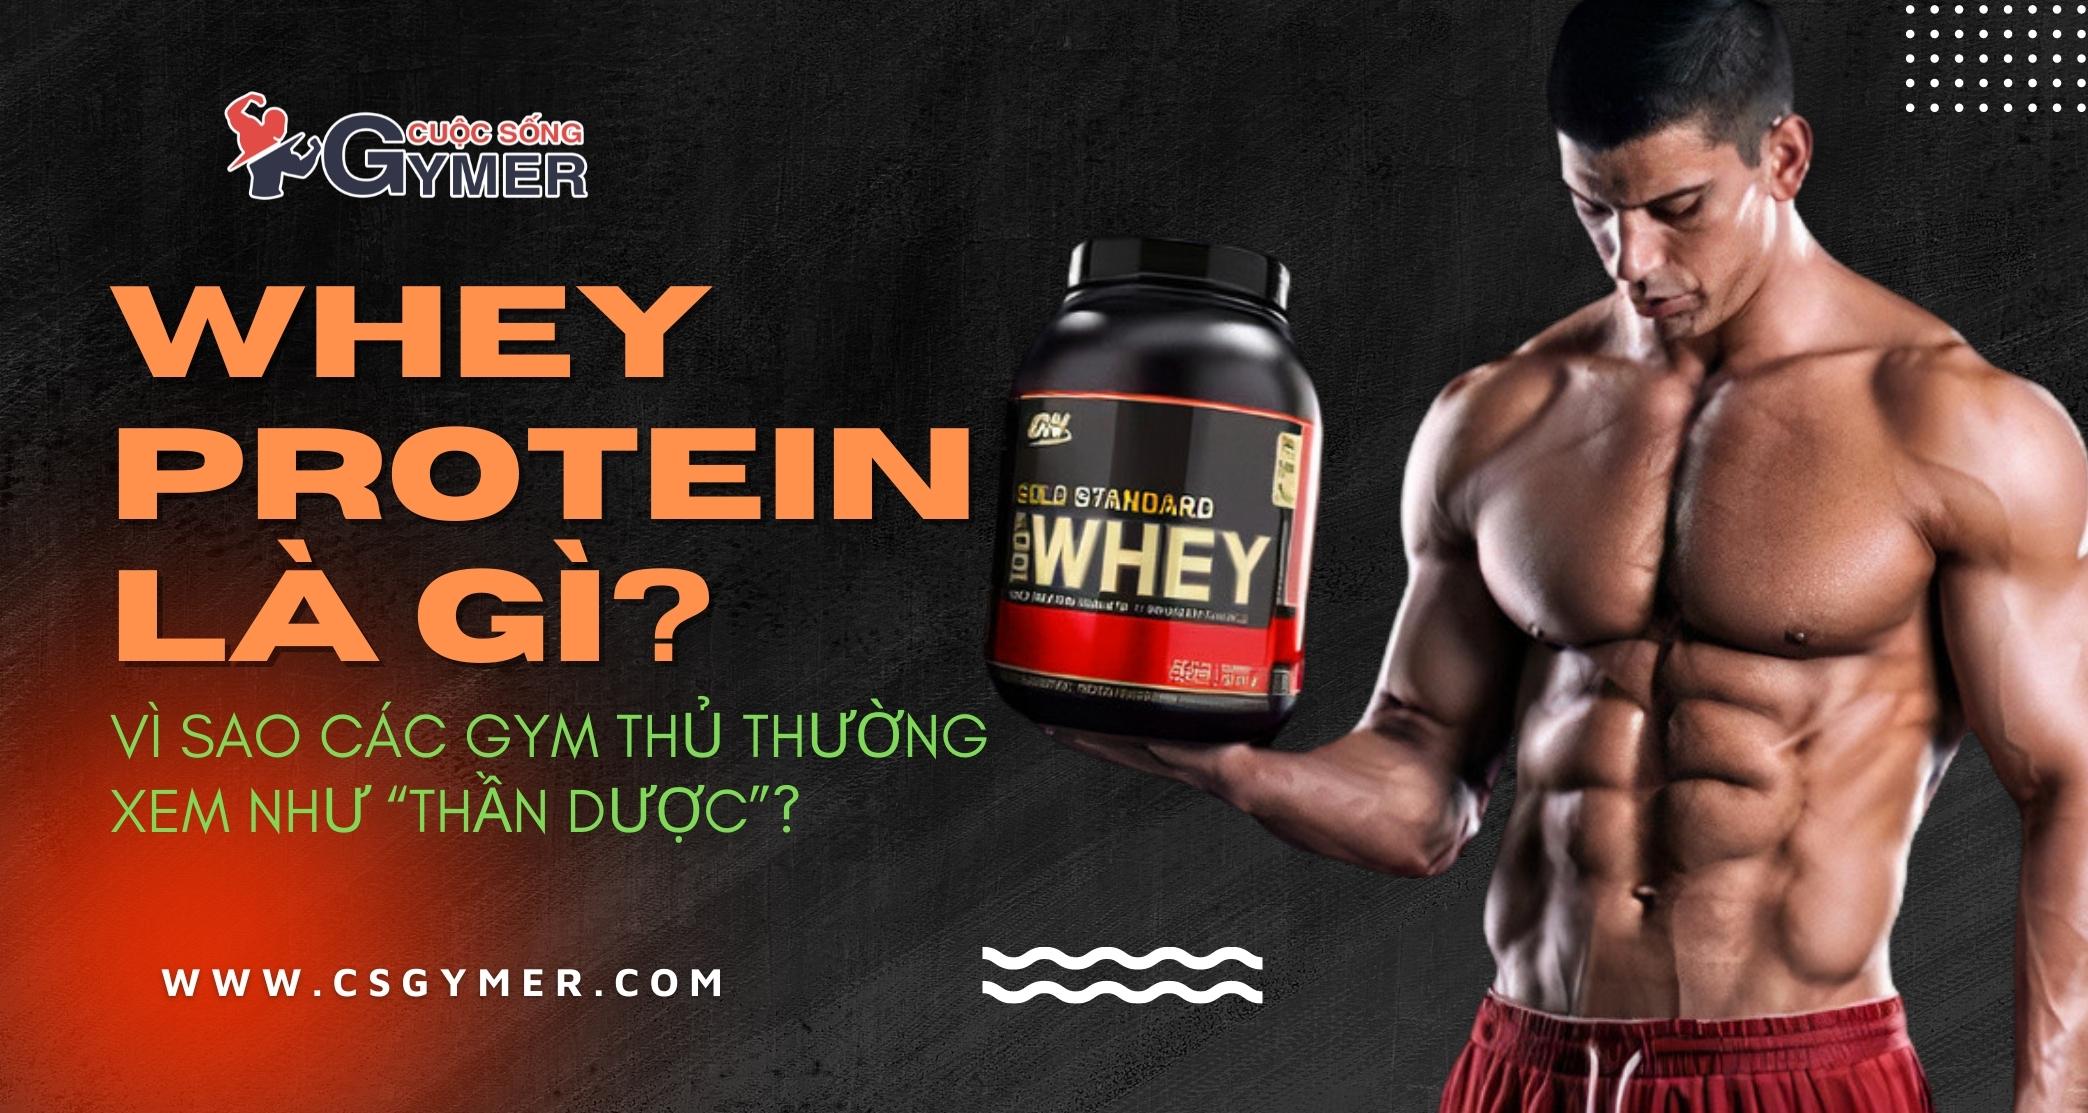 Whey Protein là gì? Vì sao các Gym thủ thường xem như “thần dược”?